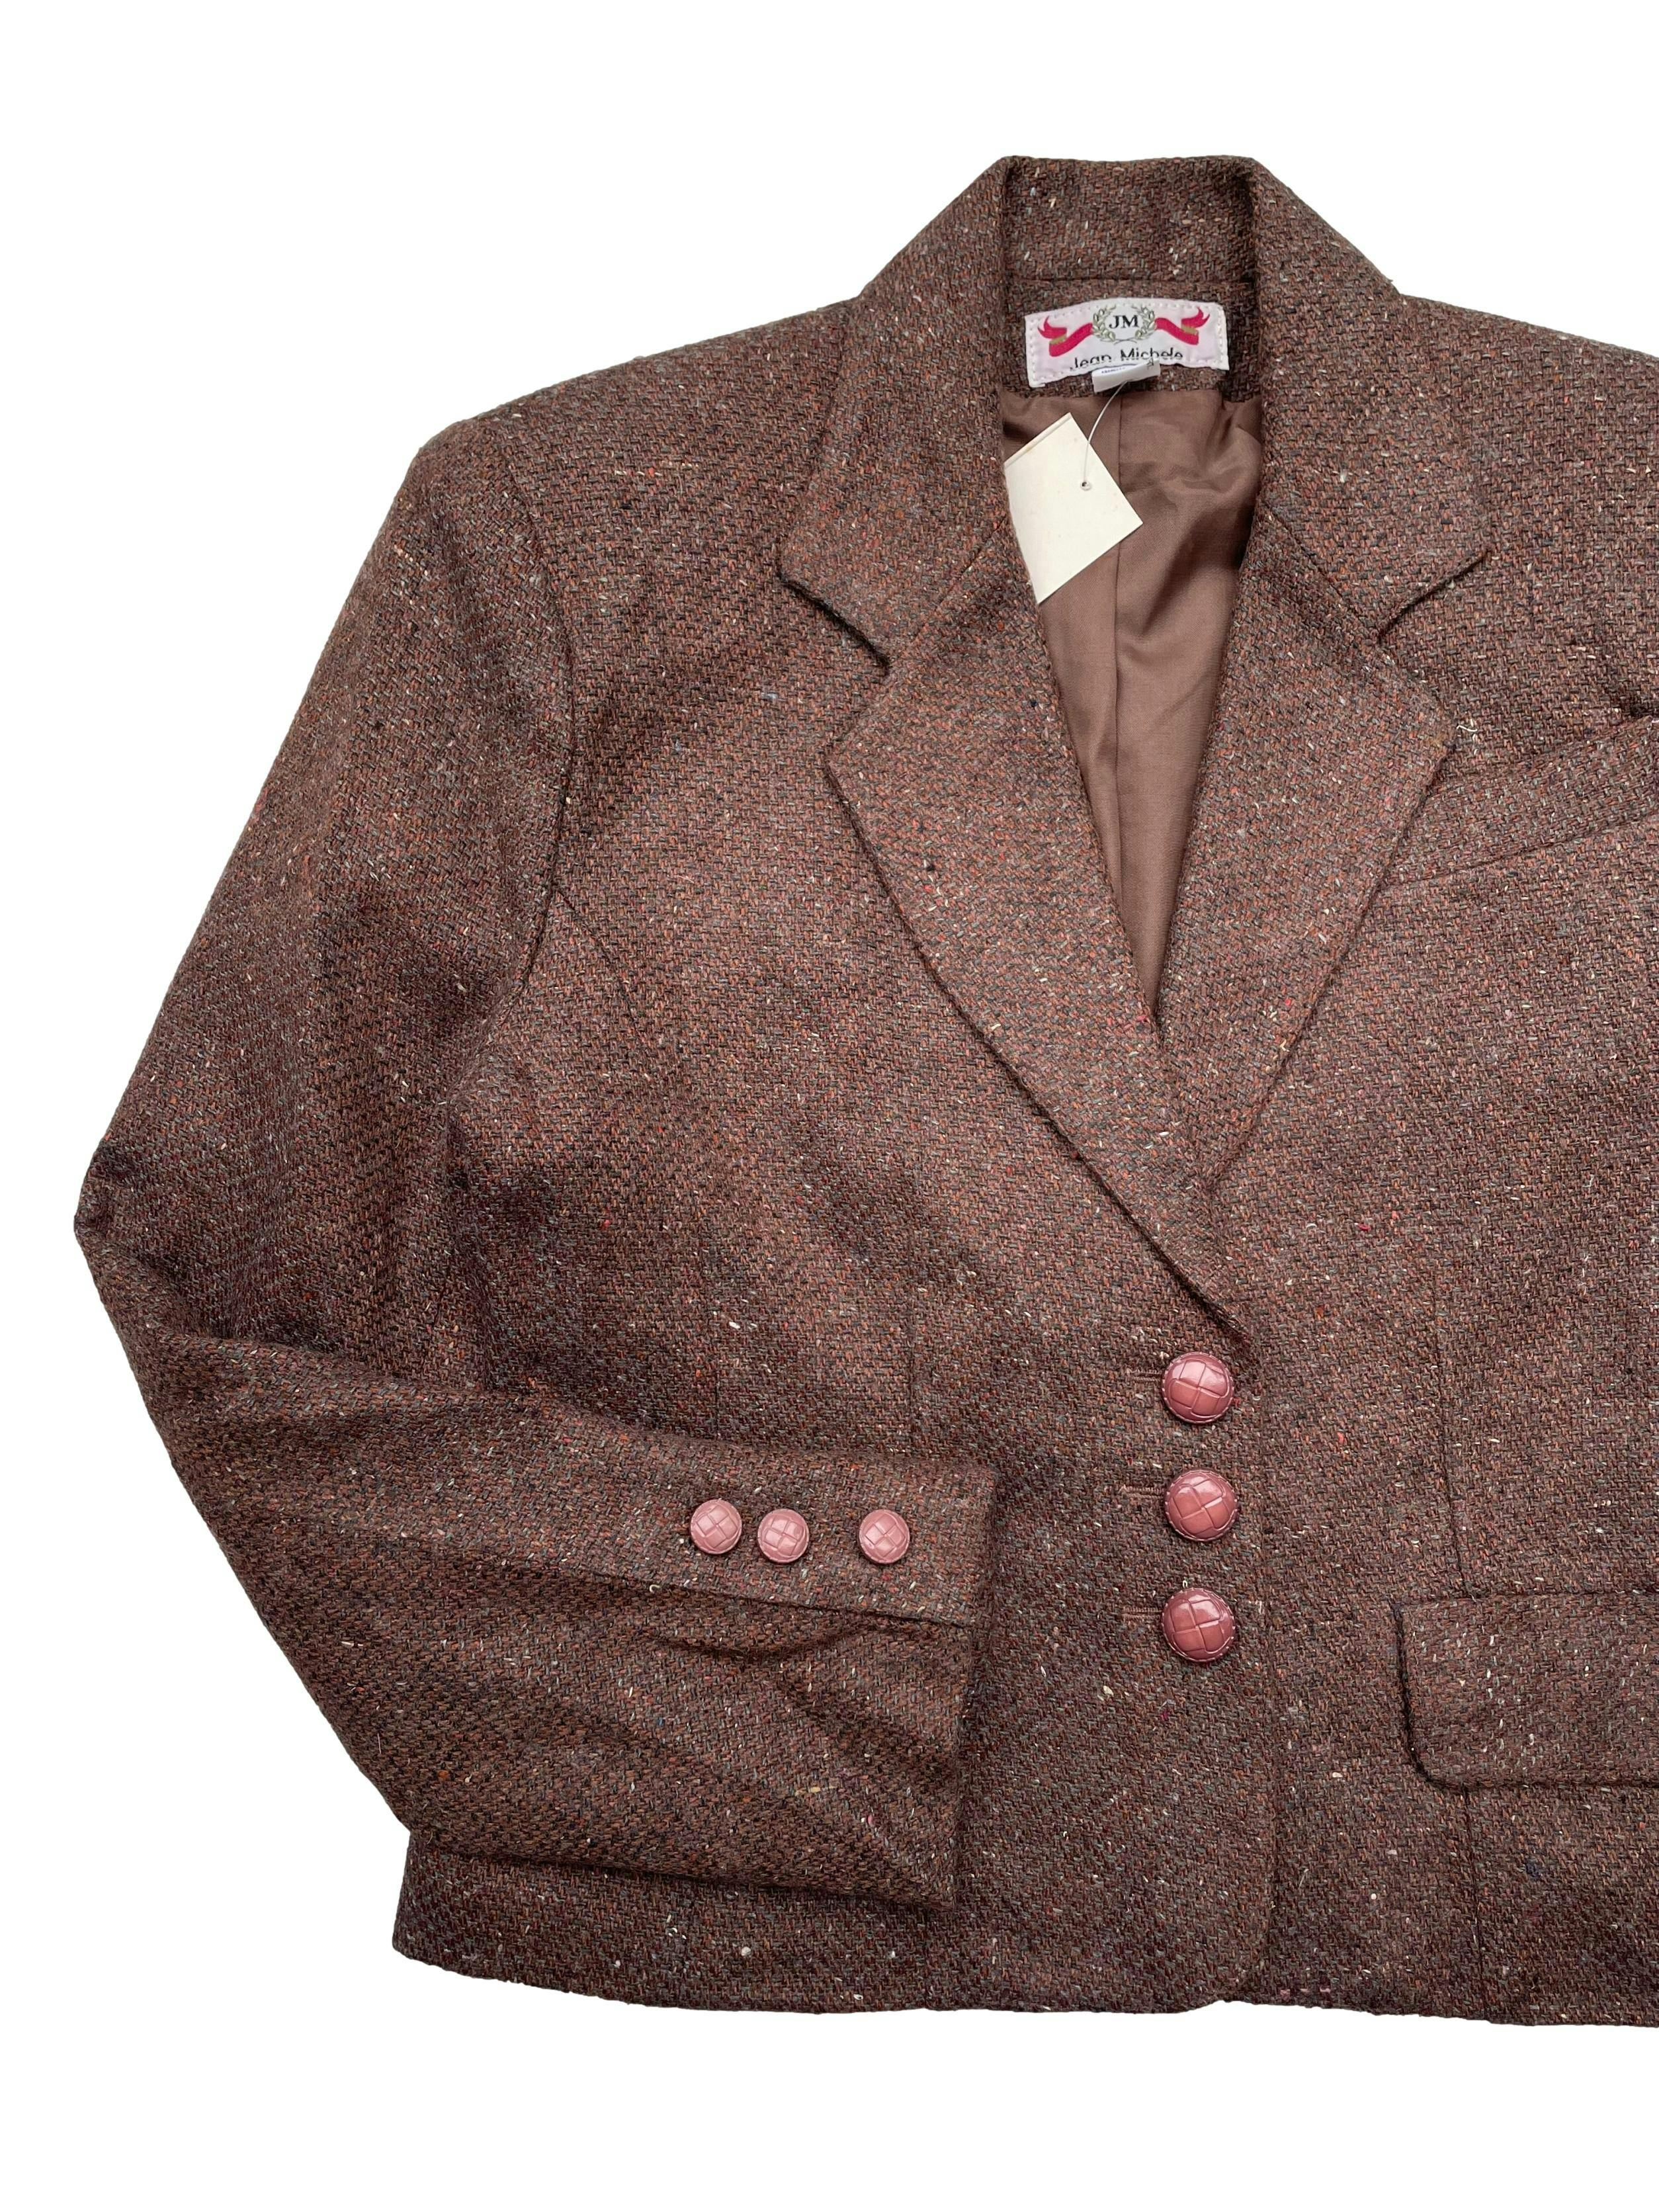 Saquito vintage marrón jaspeado 100% lana , con forro ,hombreras ,bolsillos y botones palo rosa. Marca argentina. Hombros 42cm, Largo 52cm.